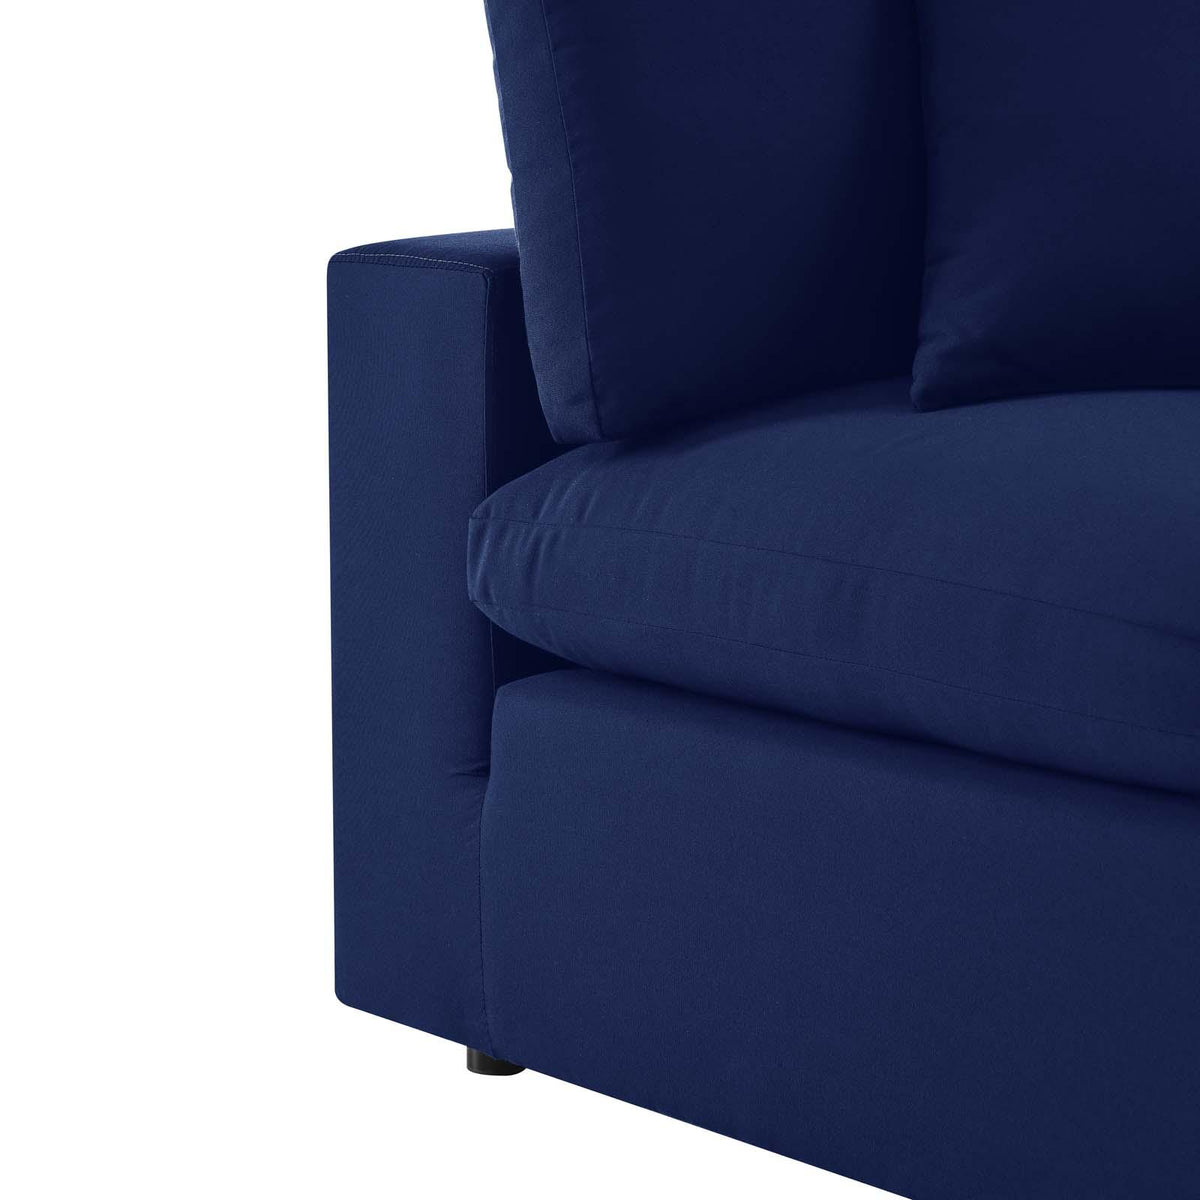 Modway Furniture Modern Commix Sunbrella® Outdoor Patio Armless Chair - EEI-4905